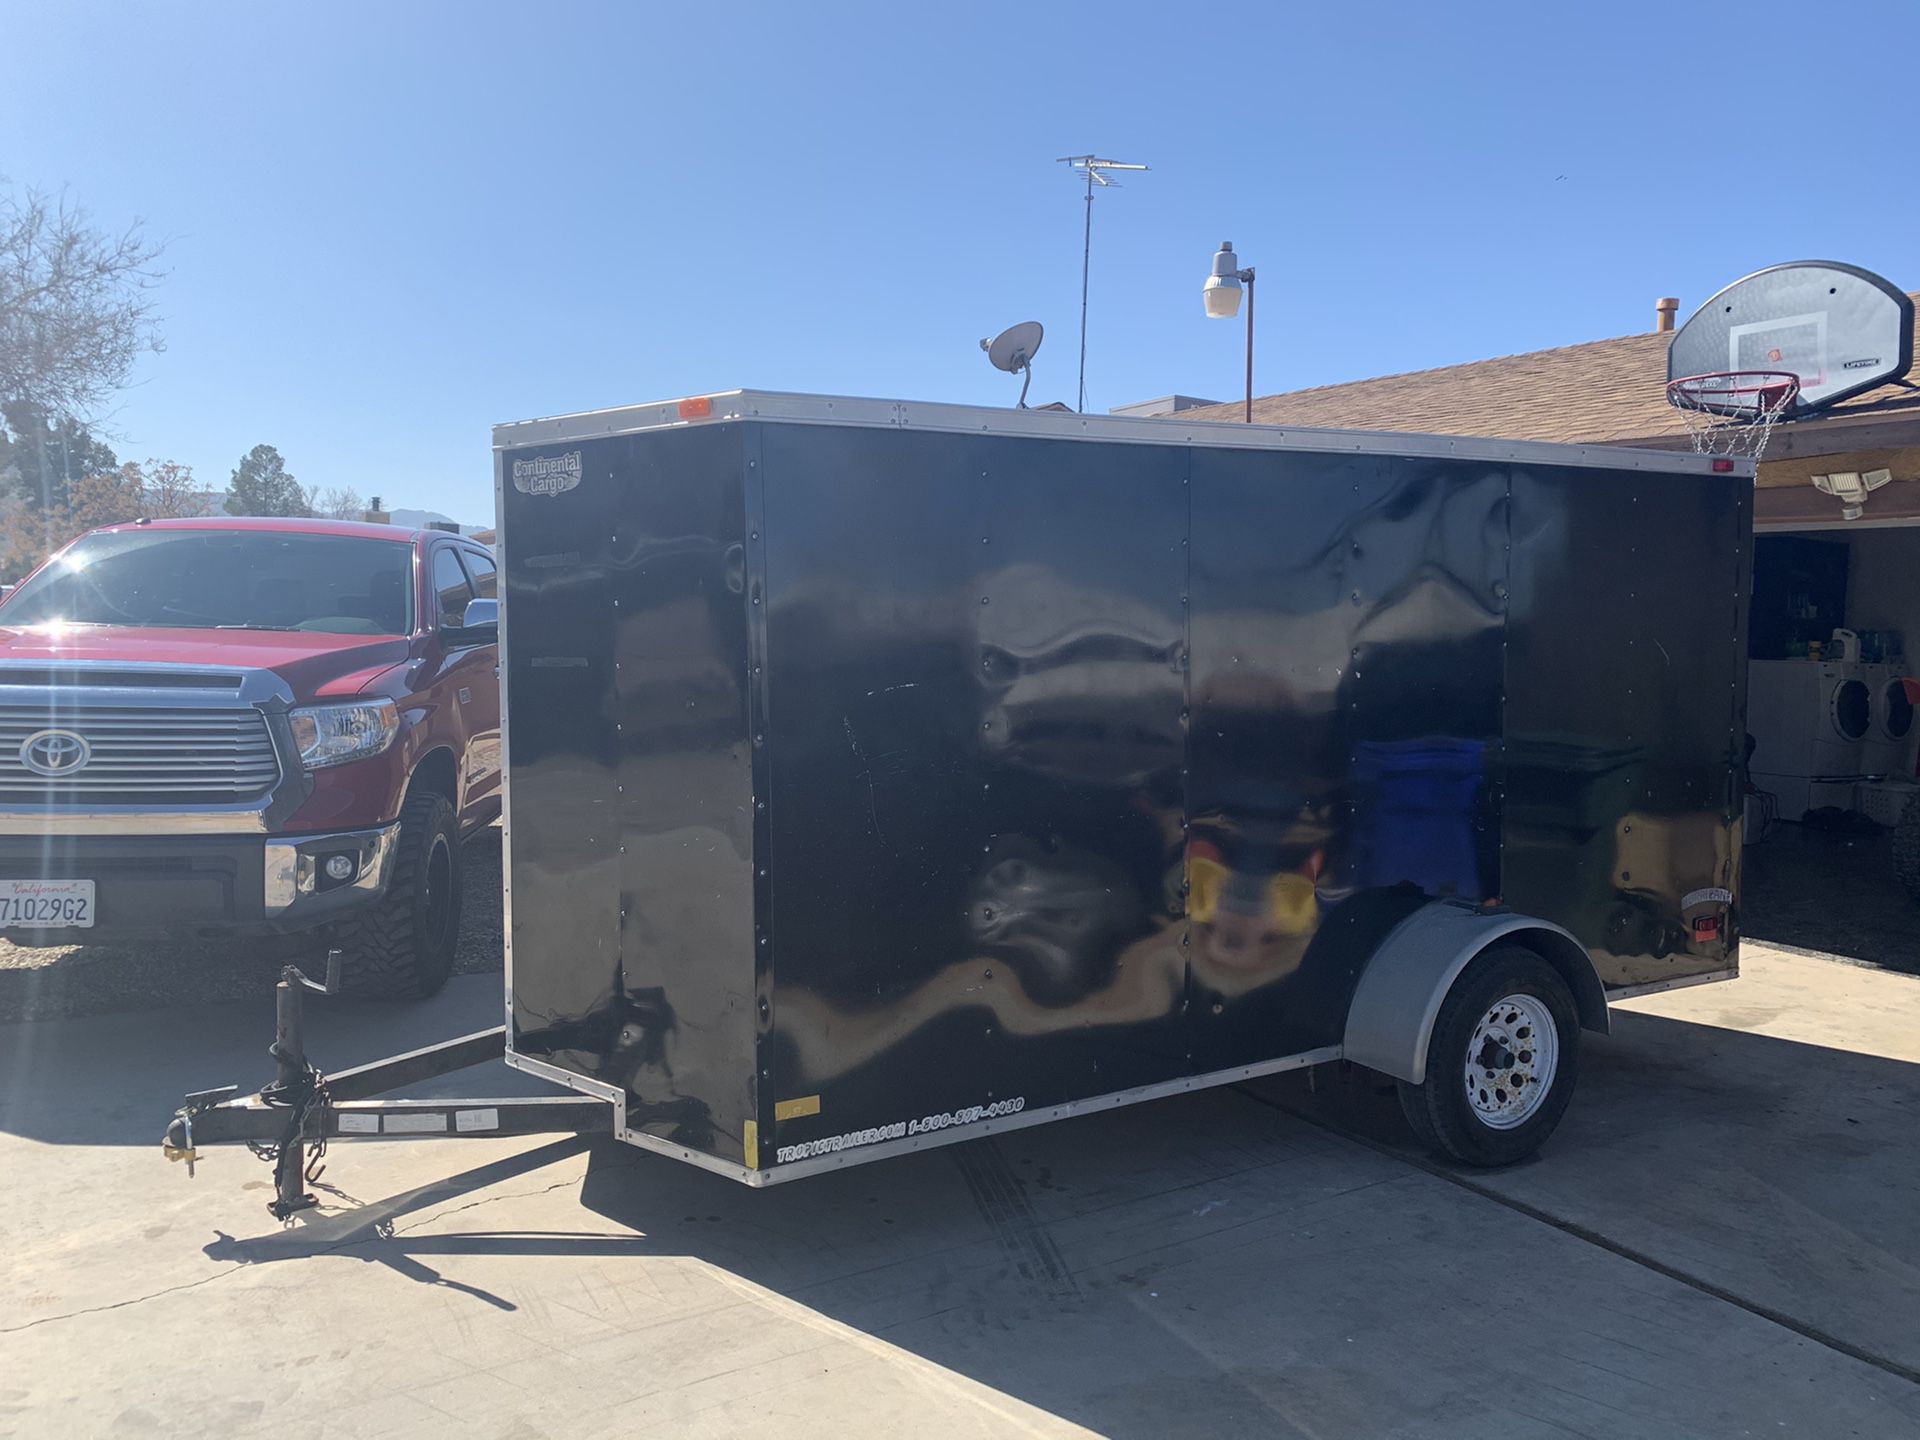 7x14 enclosed trailer